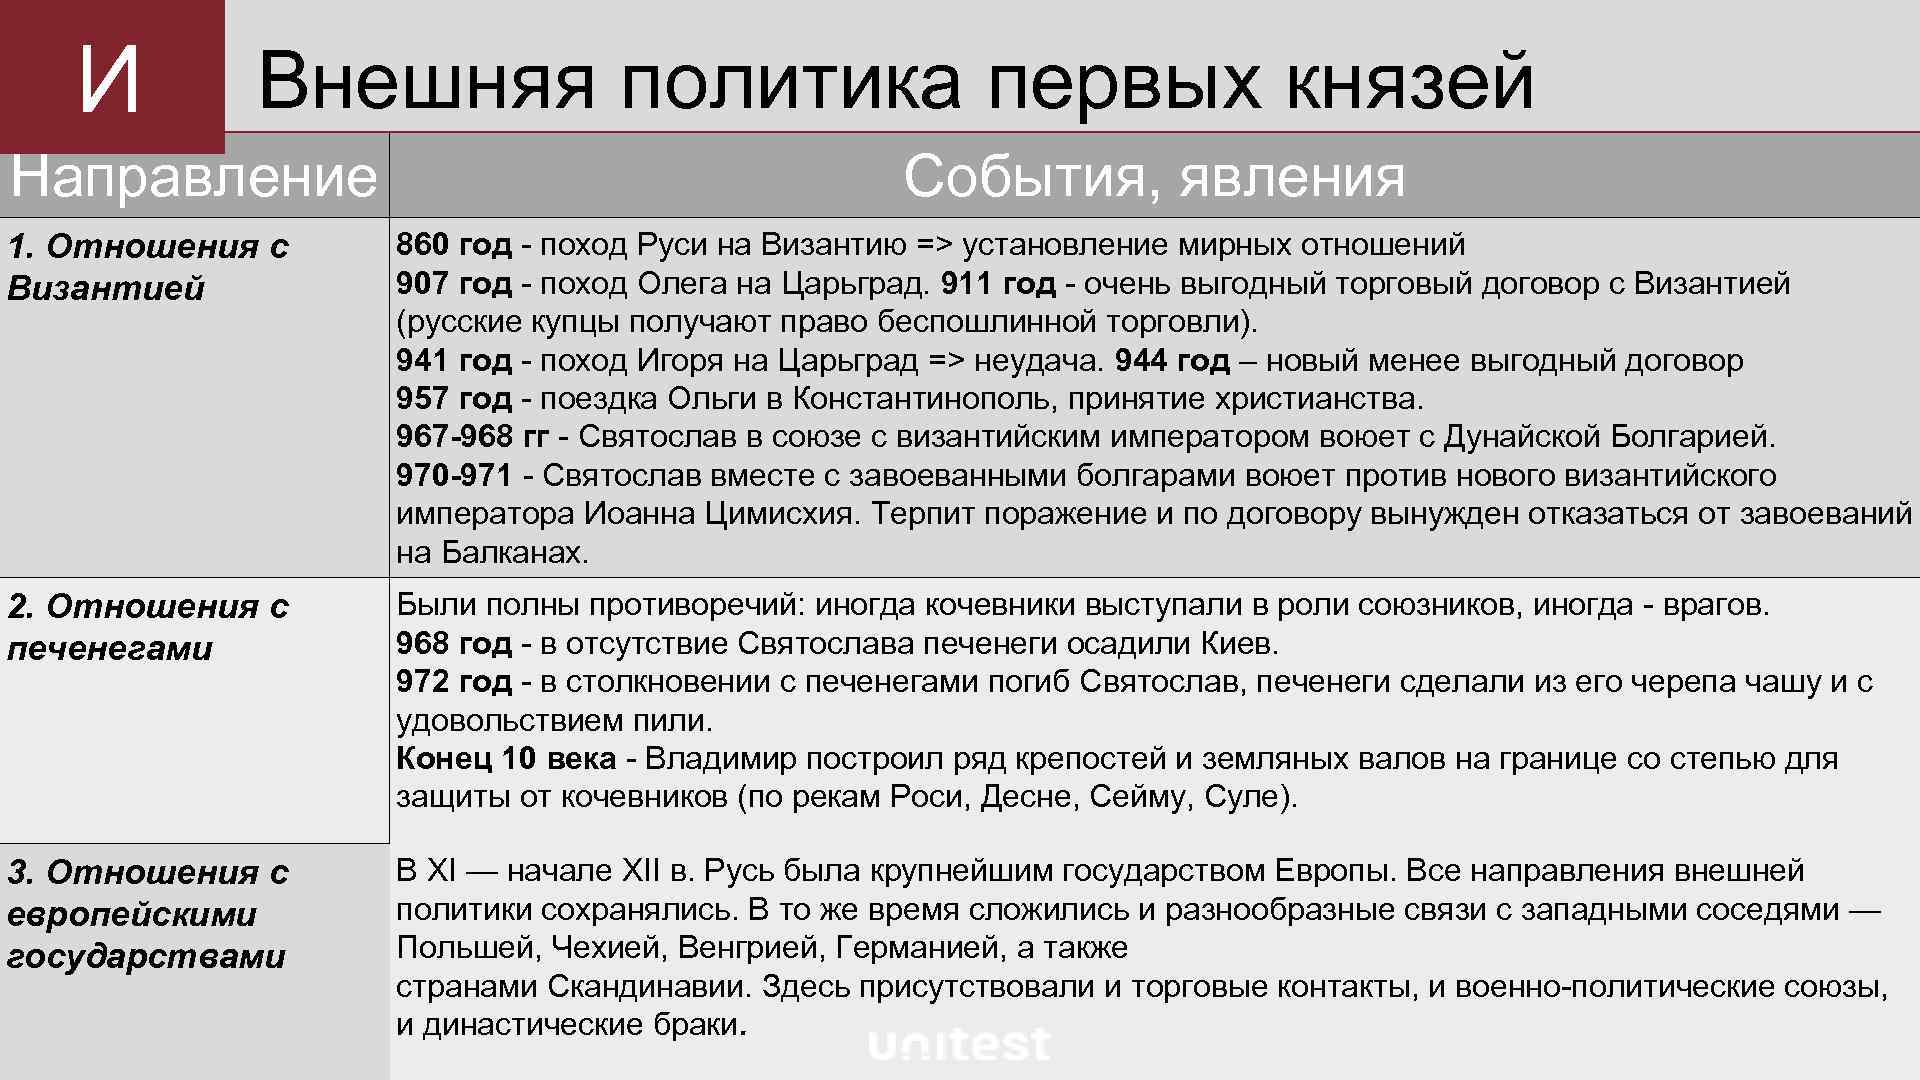 Первые киевские князья внутренняя политика. Внешняя политика древнерусских князей.